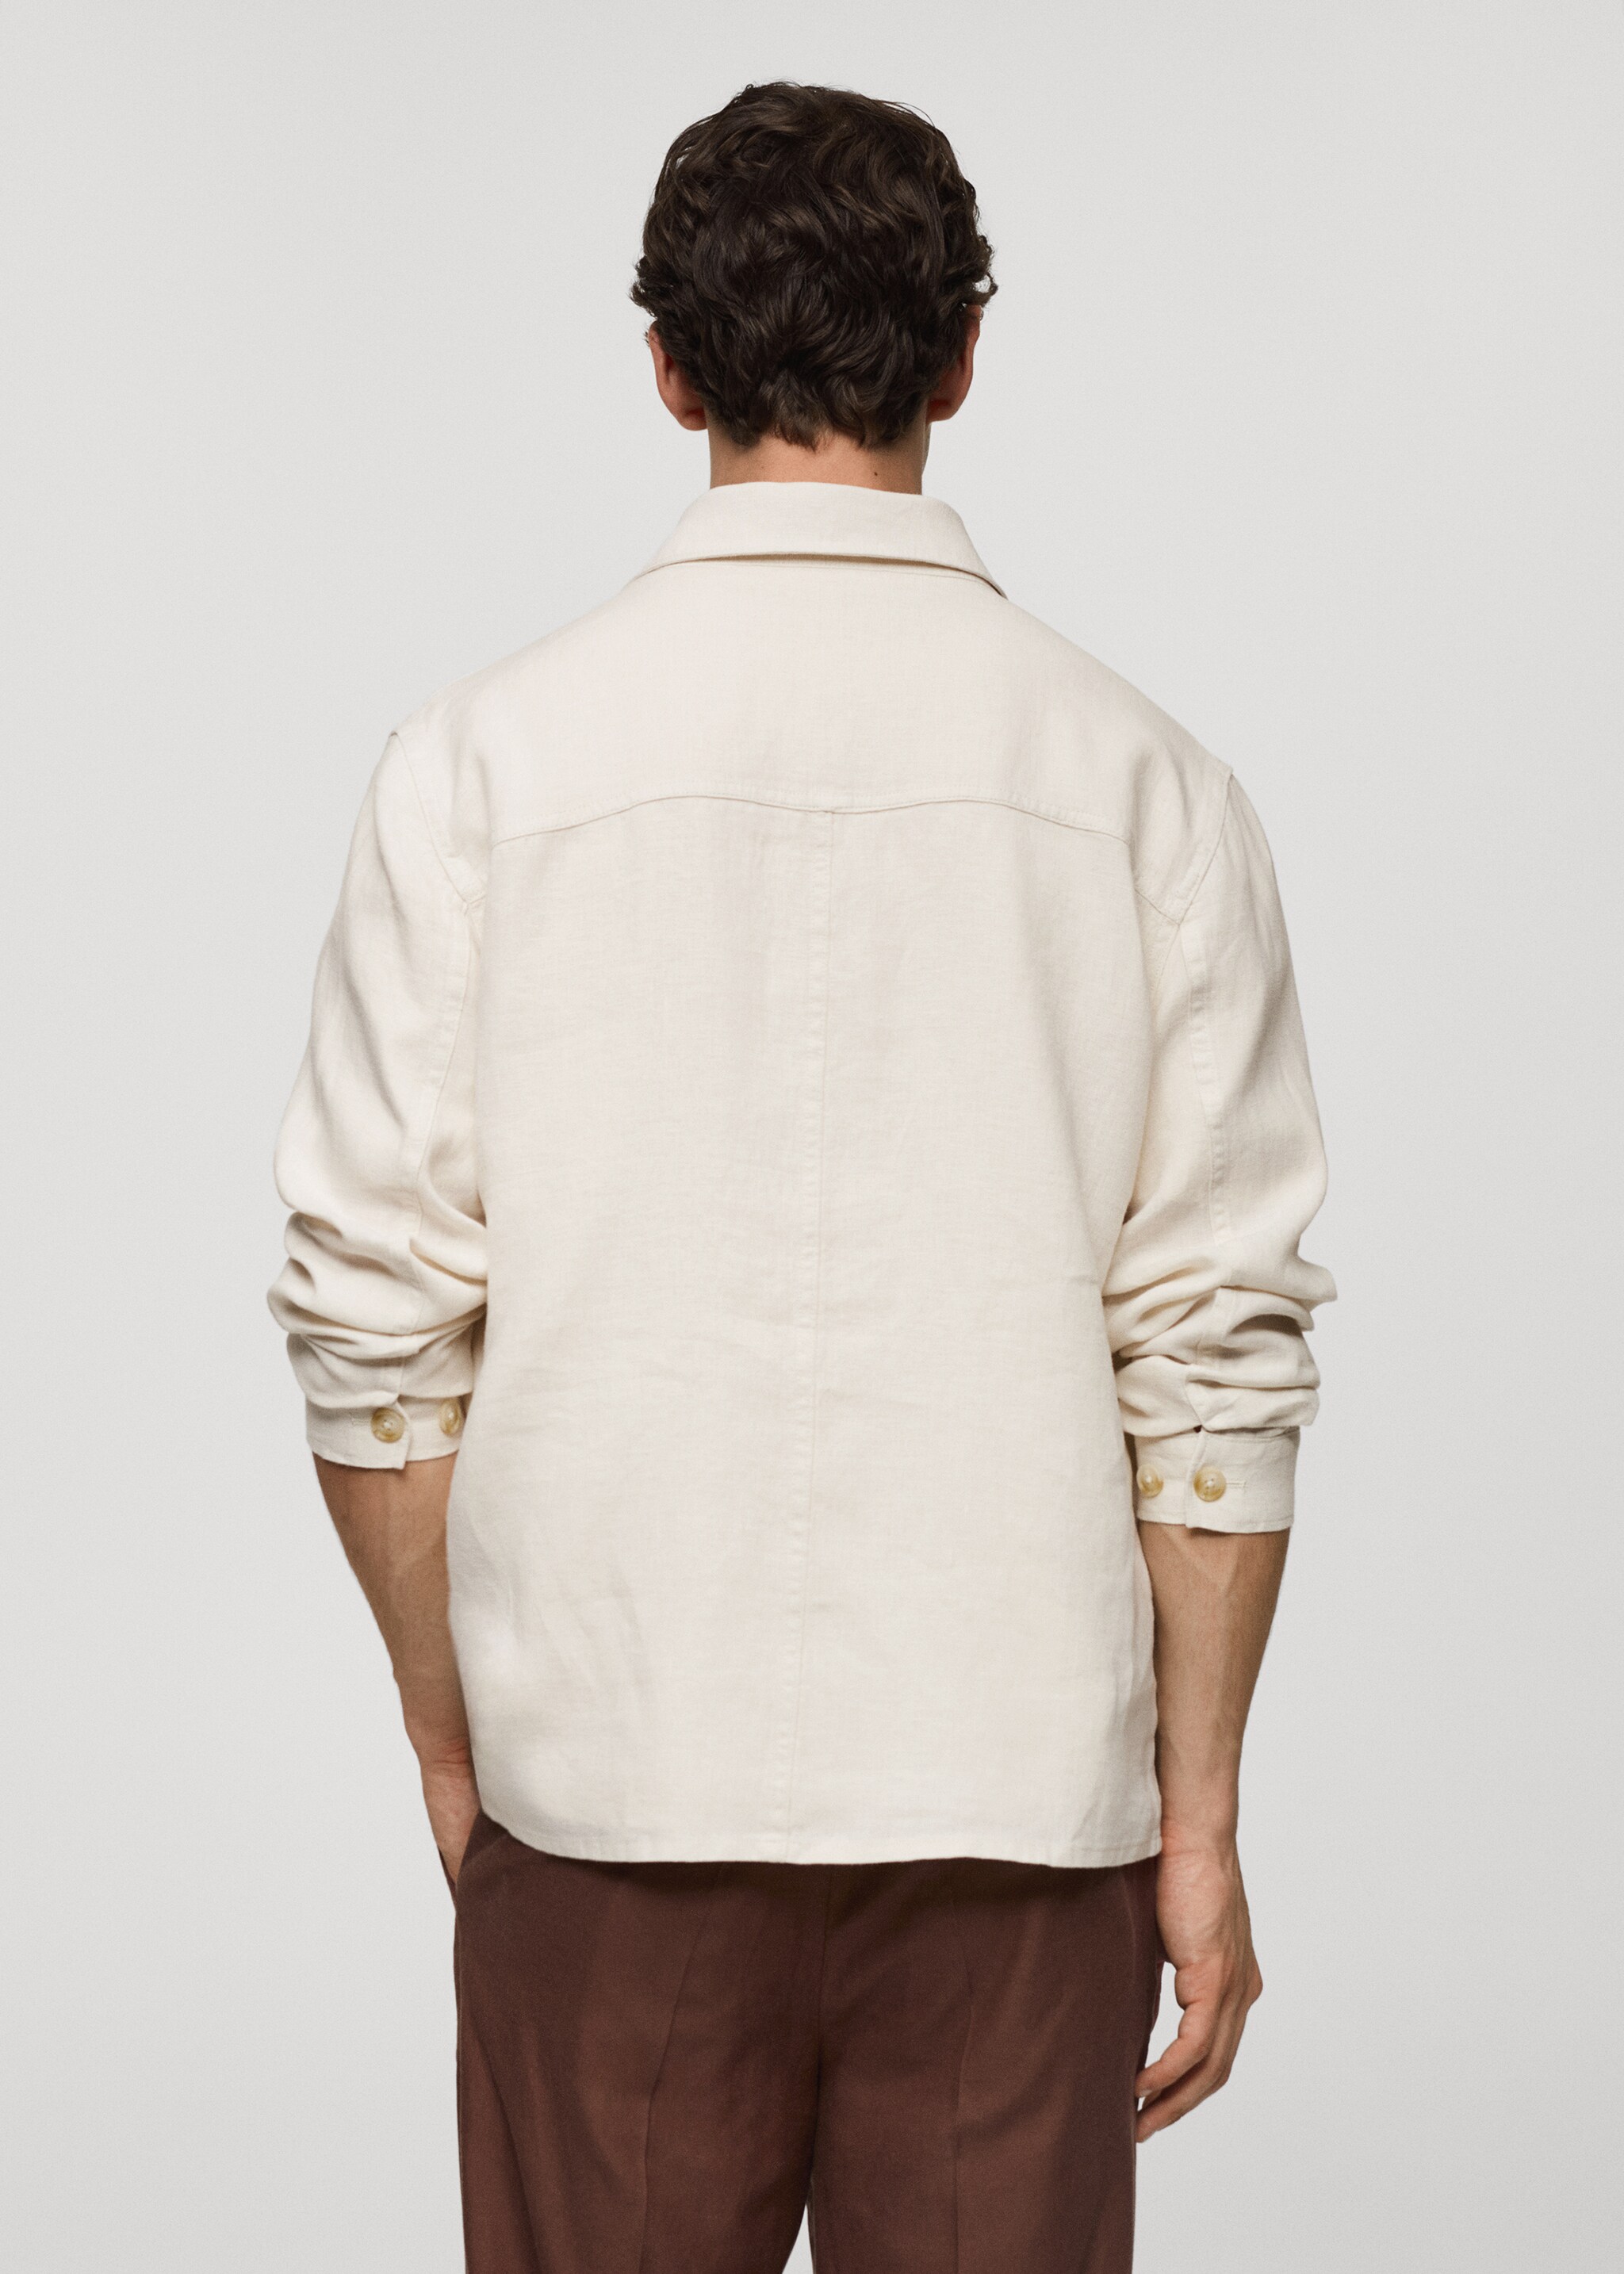 Верхняя рубашка 100% лен с карманами - Обратная сторона изделия